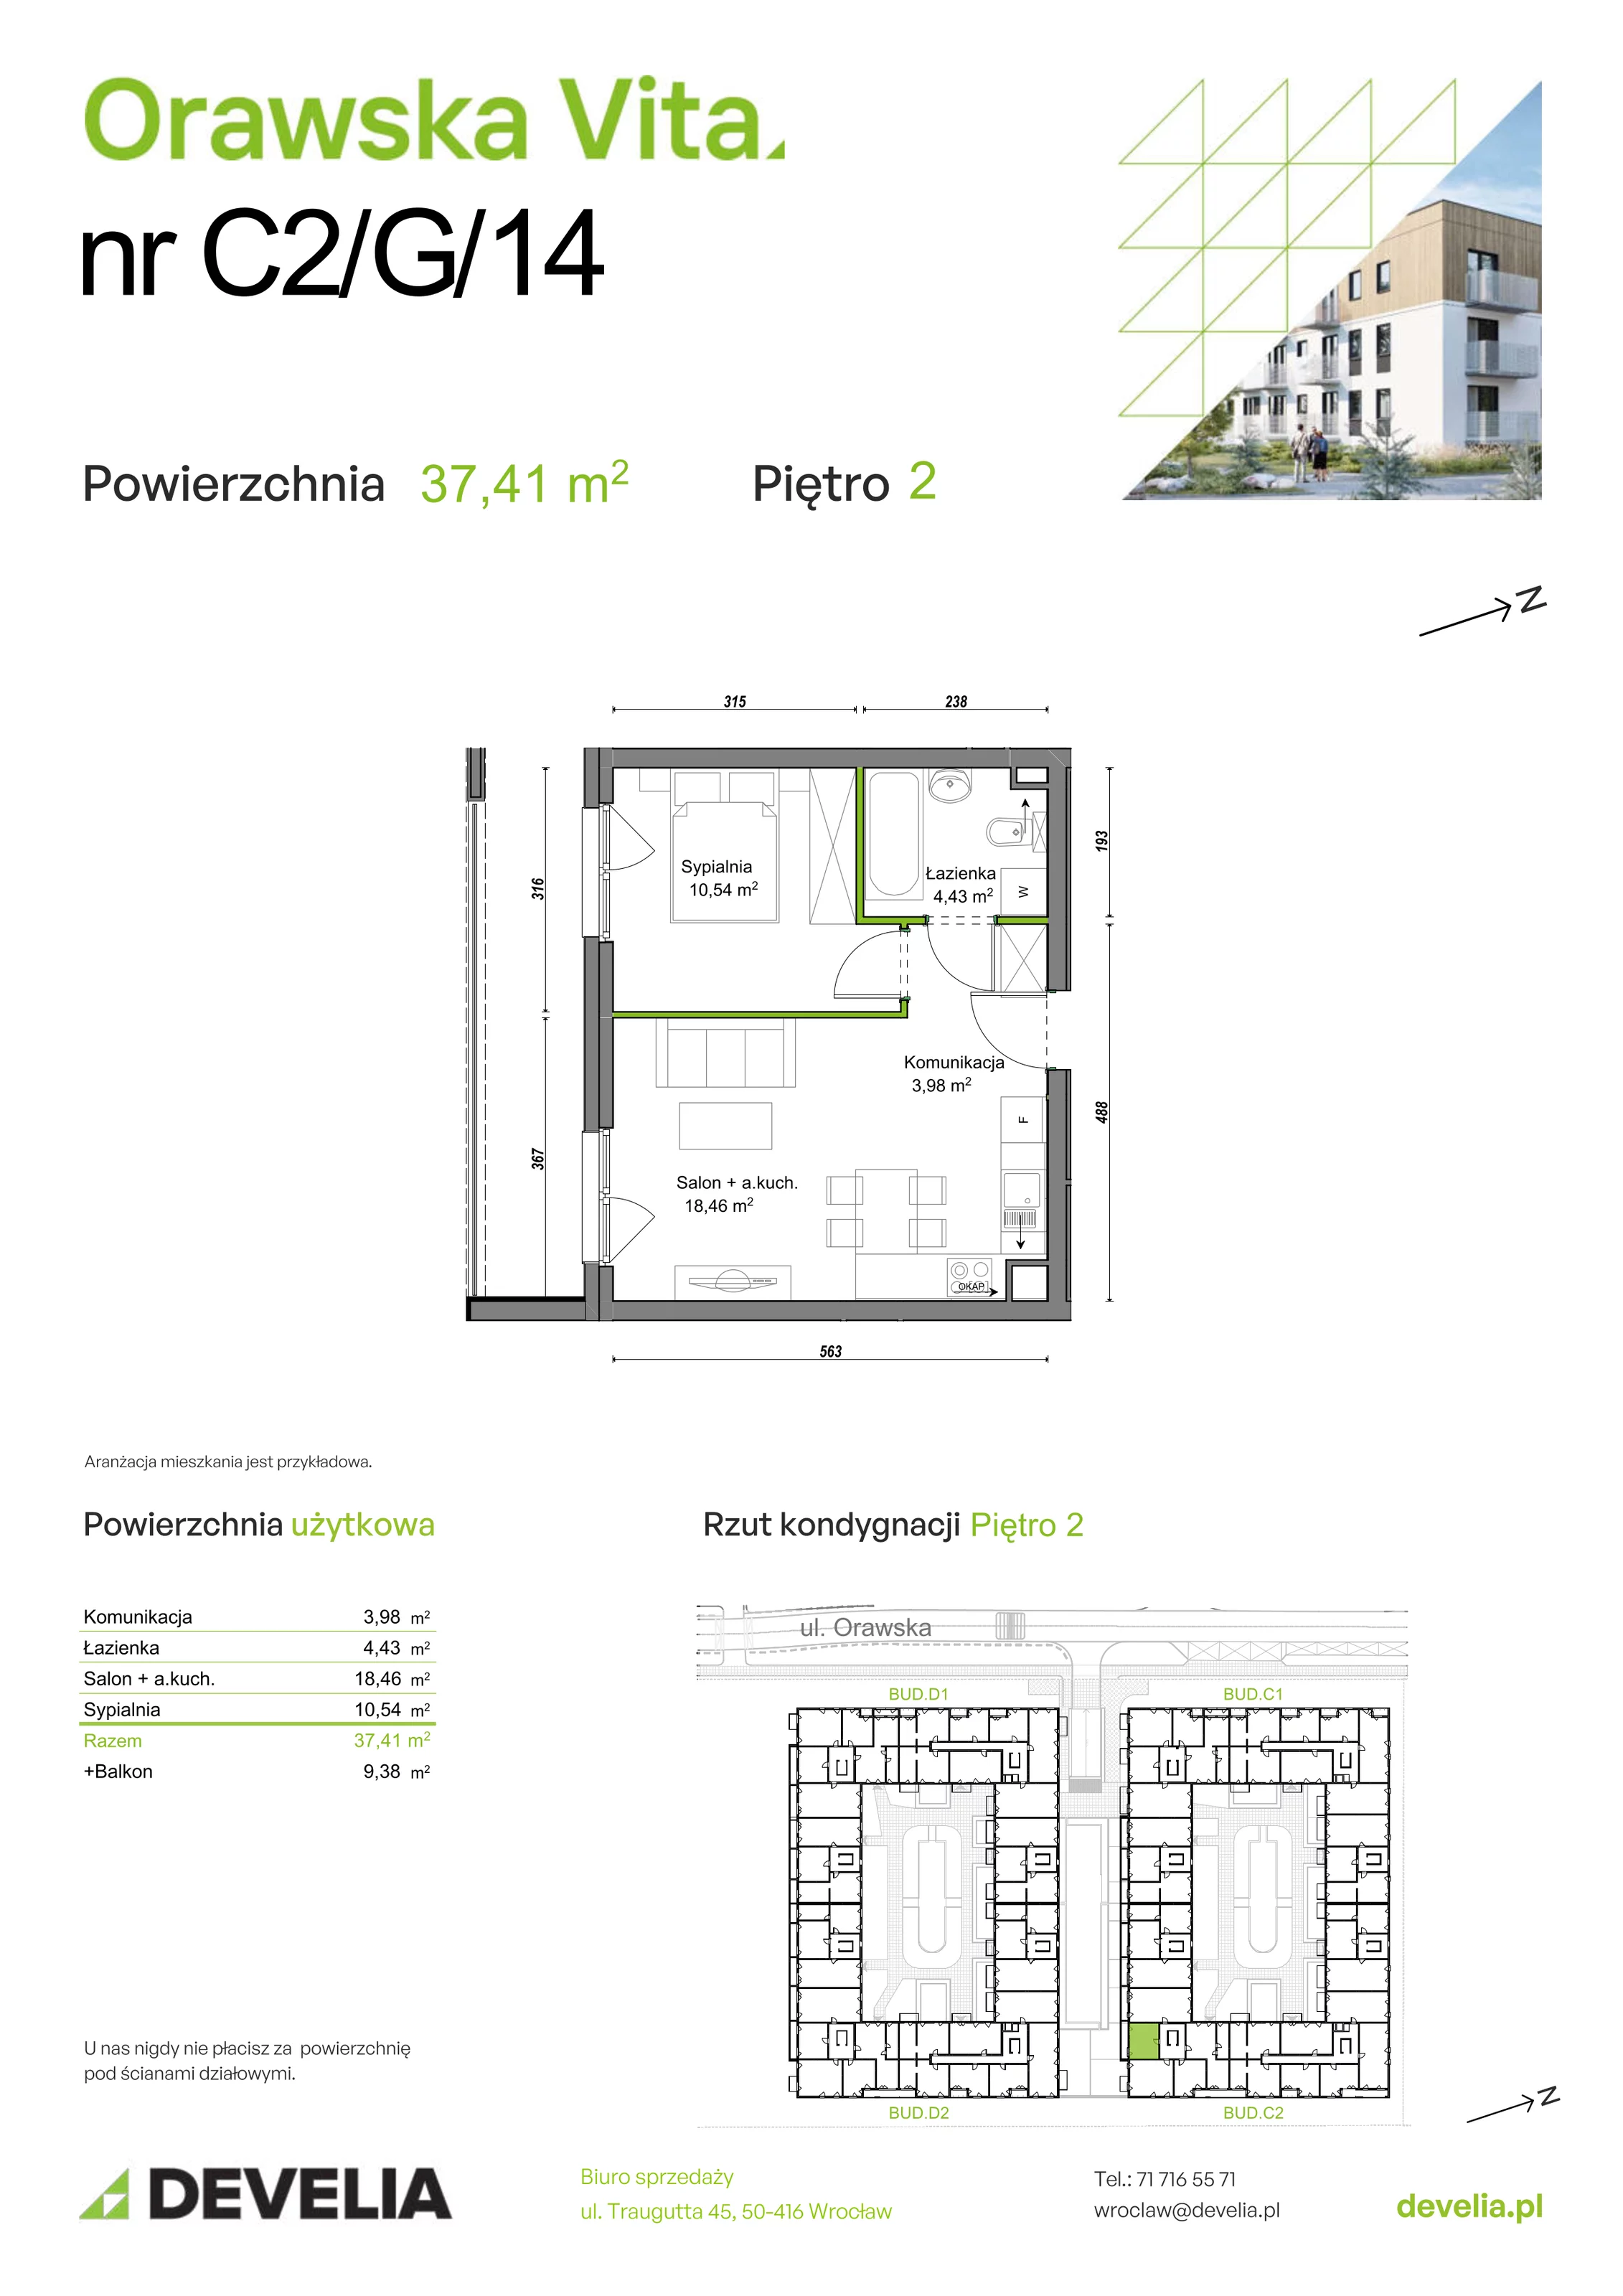 Mieszkanie 37,41 m², piętro 2, oferta nr C2/G/14, Orawska Vita, Wrocław, Ołtaszyn, Krzyki, ul. Orawska 73